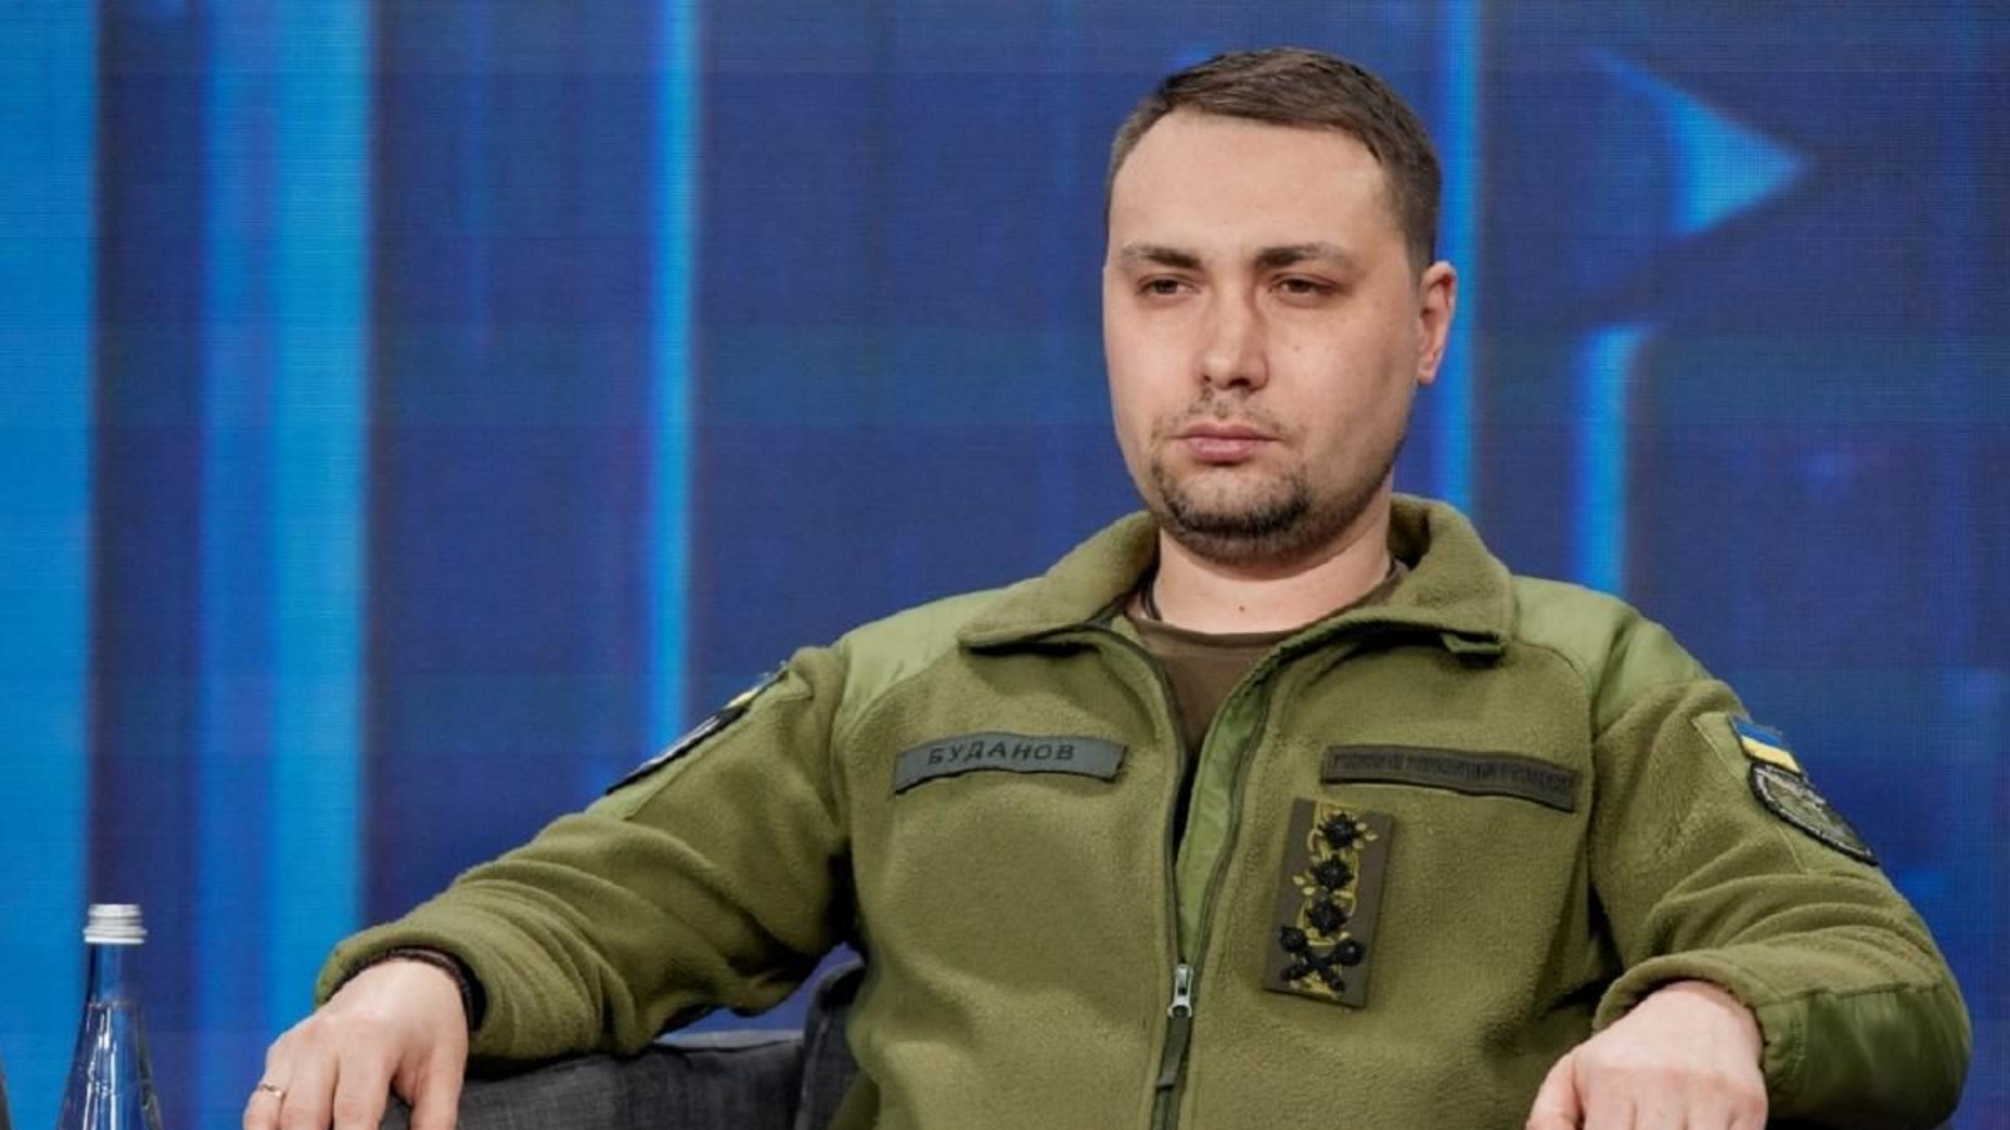 Керівник ГУР Буданов слідкує за спецопераціями в режимі онлайн